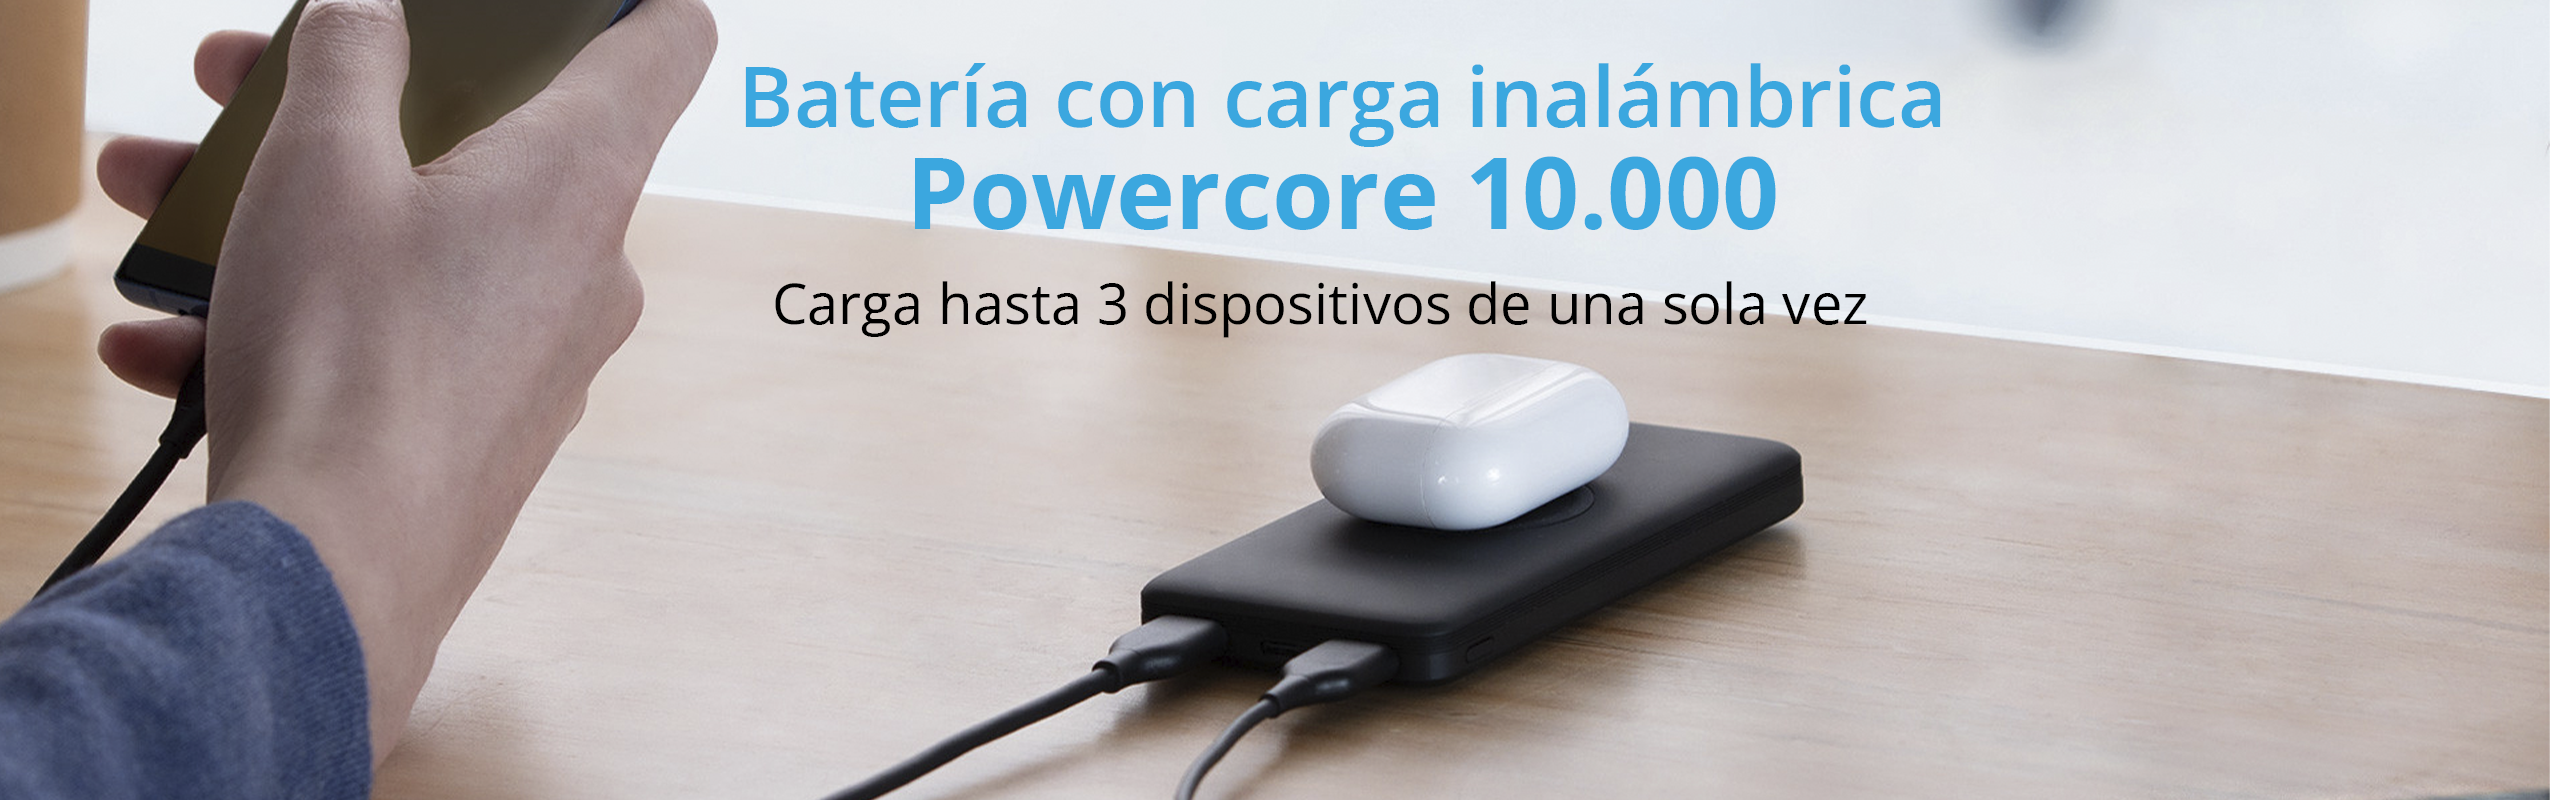 Batería externa con carga inalámbrica PowerCore 10.000